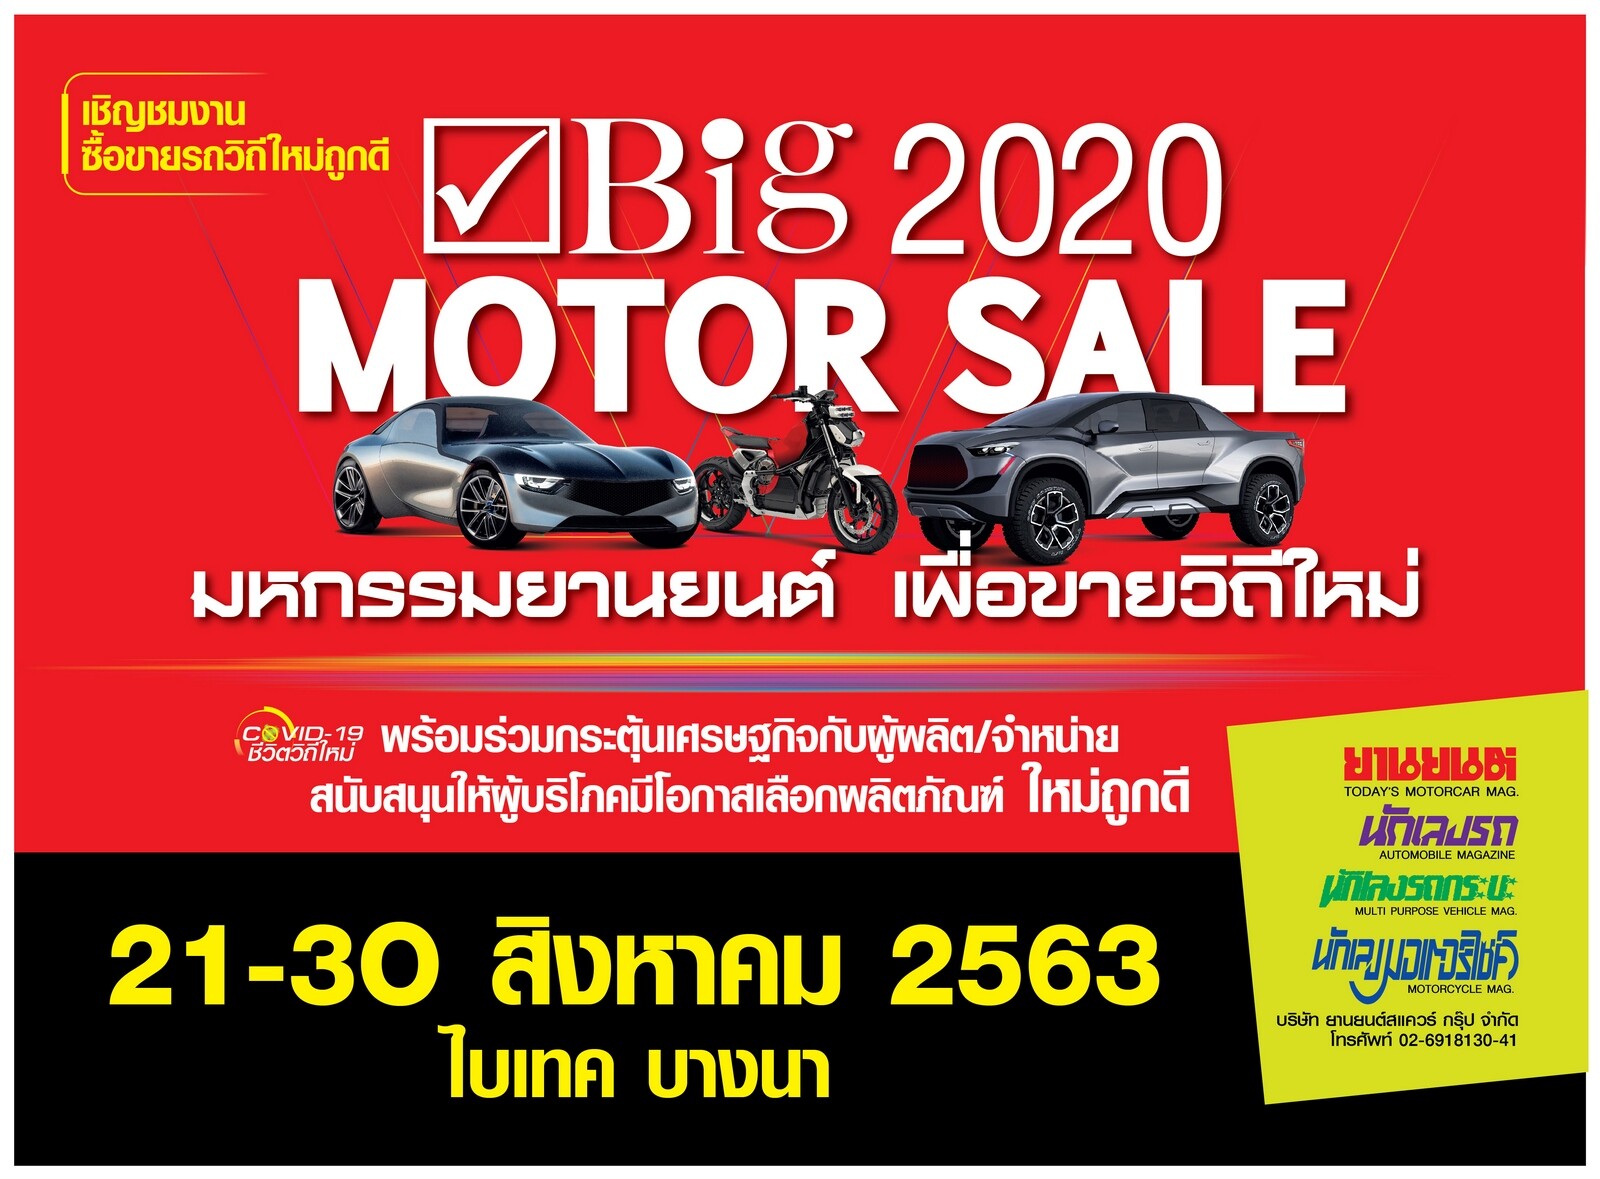 “Big Motor Sale 2020” งานขายรถวิถีใหม่ จัดใหญ่กระหึ่มเมืองระดมโปรถูก แคมเปญเด็ด ช่วยขับเคลื่อนเศรษฐกิจไทย 21-30 สิงหาคมนี้ ที่ไบเทค บางนา